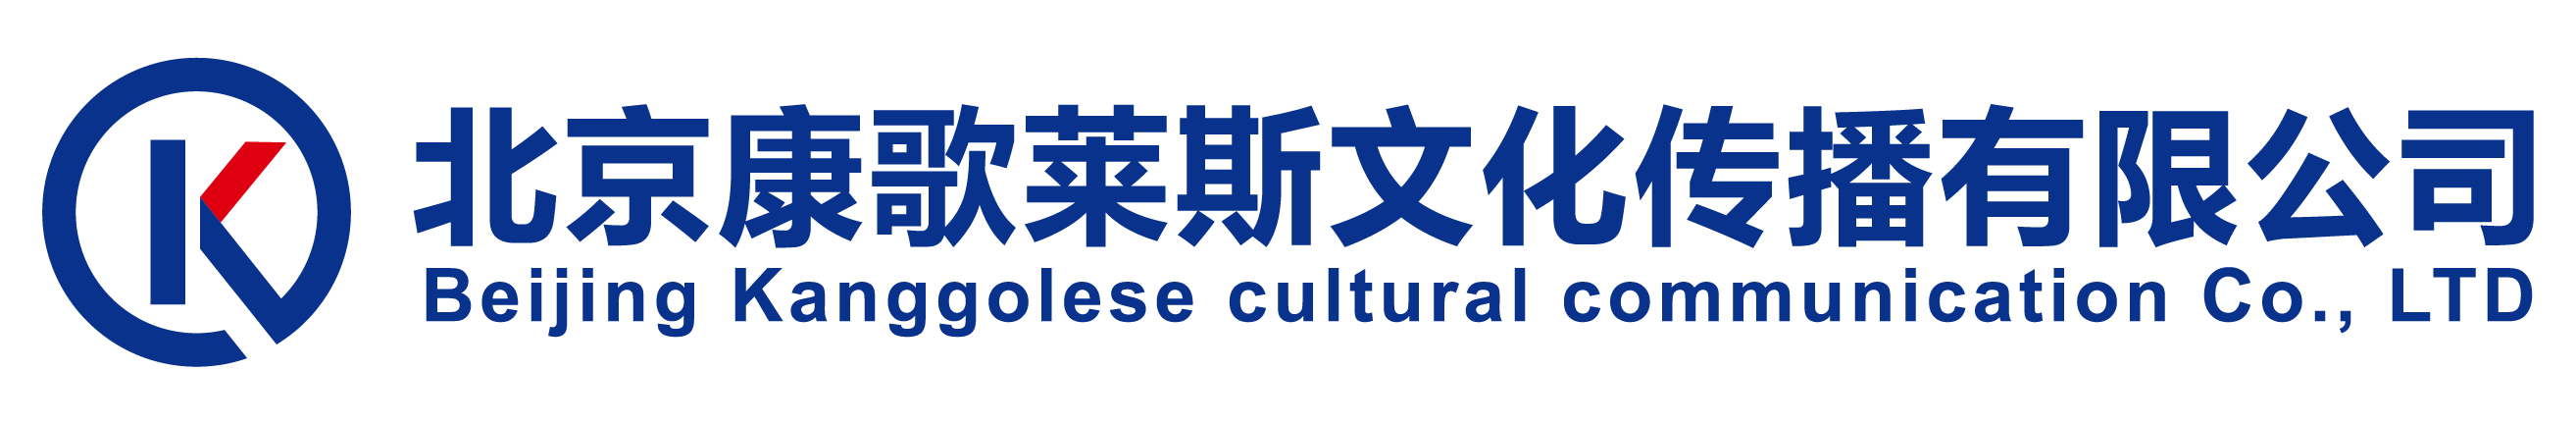 北京康歌莱斯文化传播有限公司